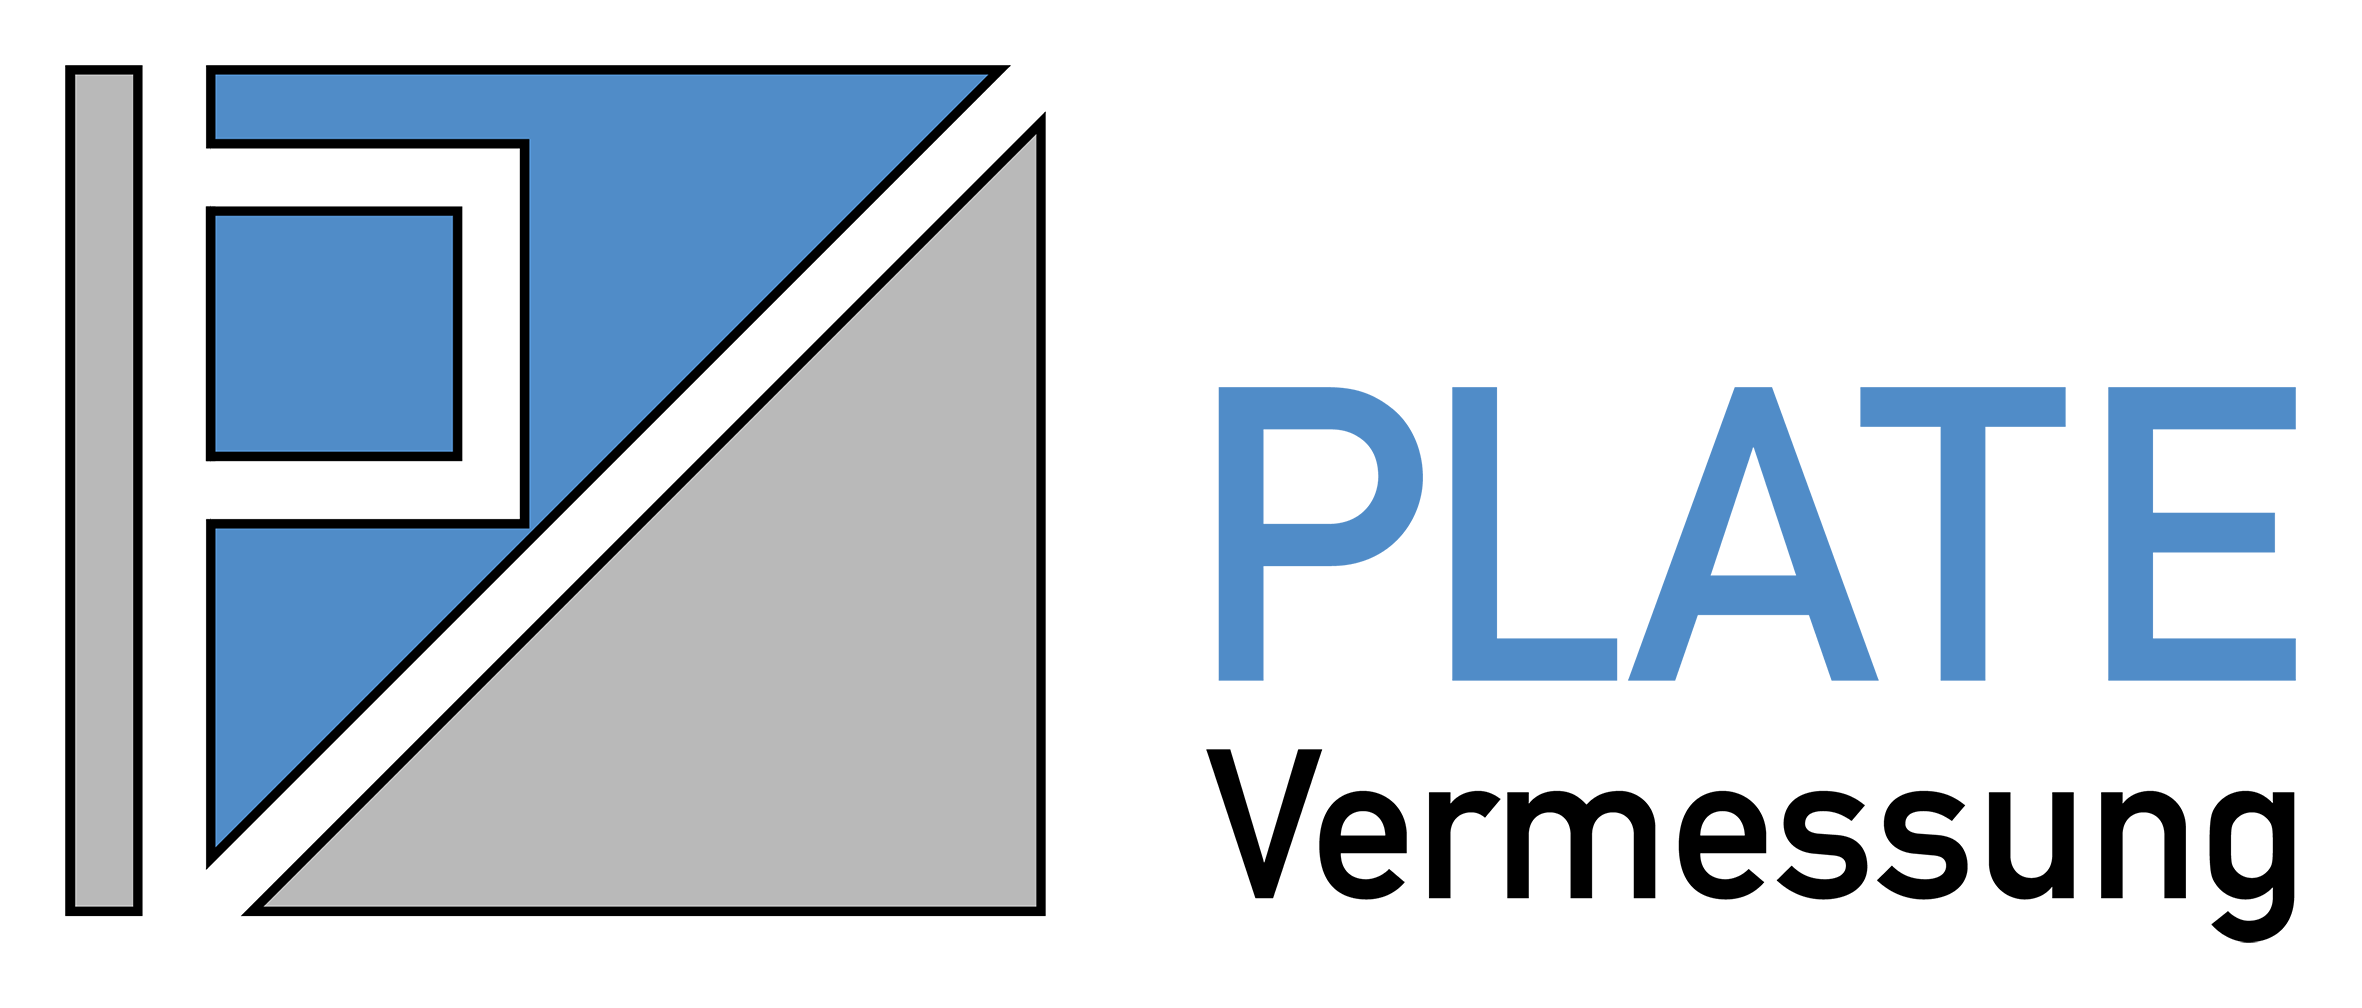 Vermessung Plate Logo